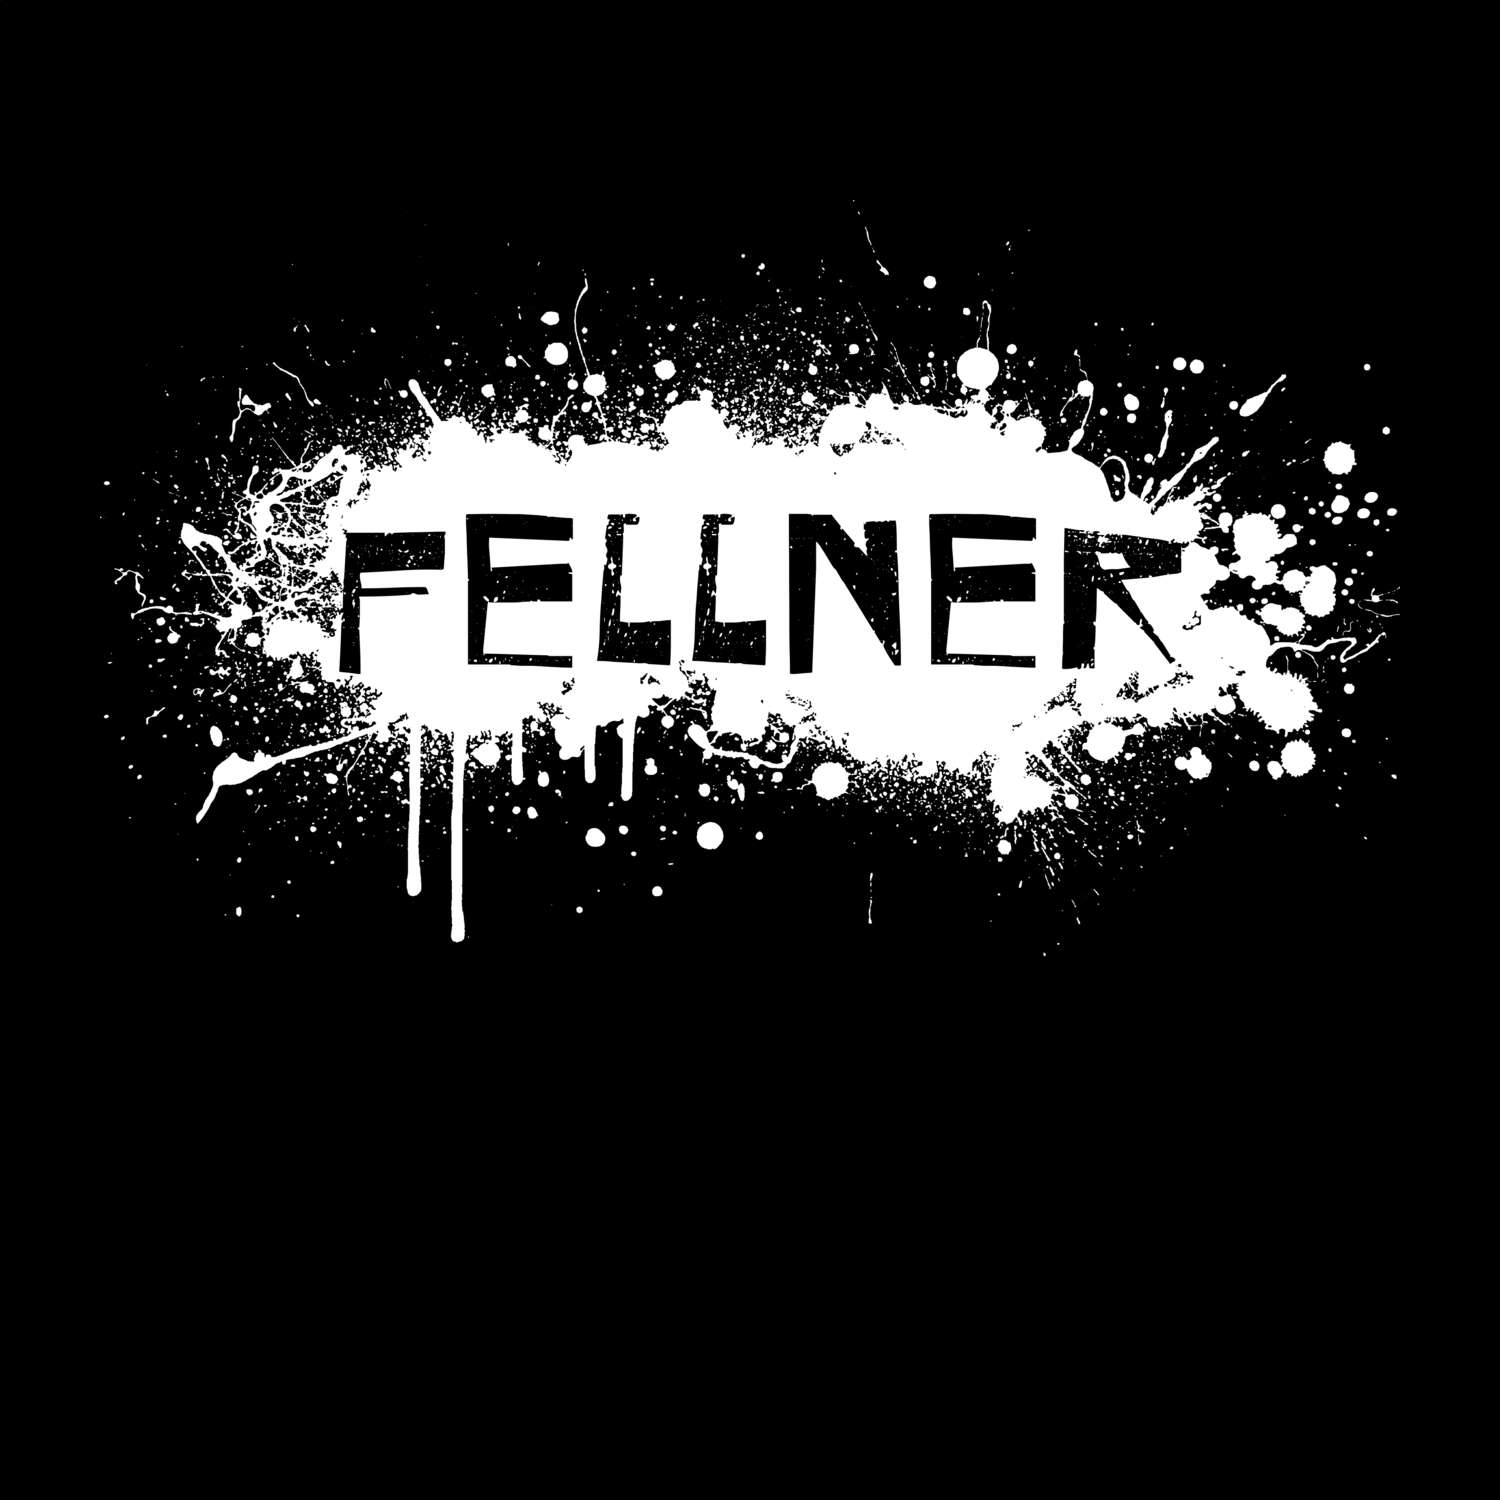 Fellner T-Shirt »Paint Splash Punk«